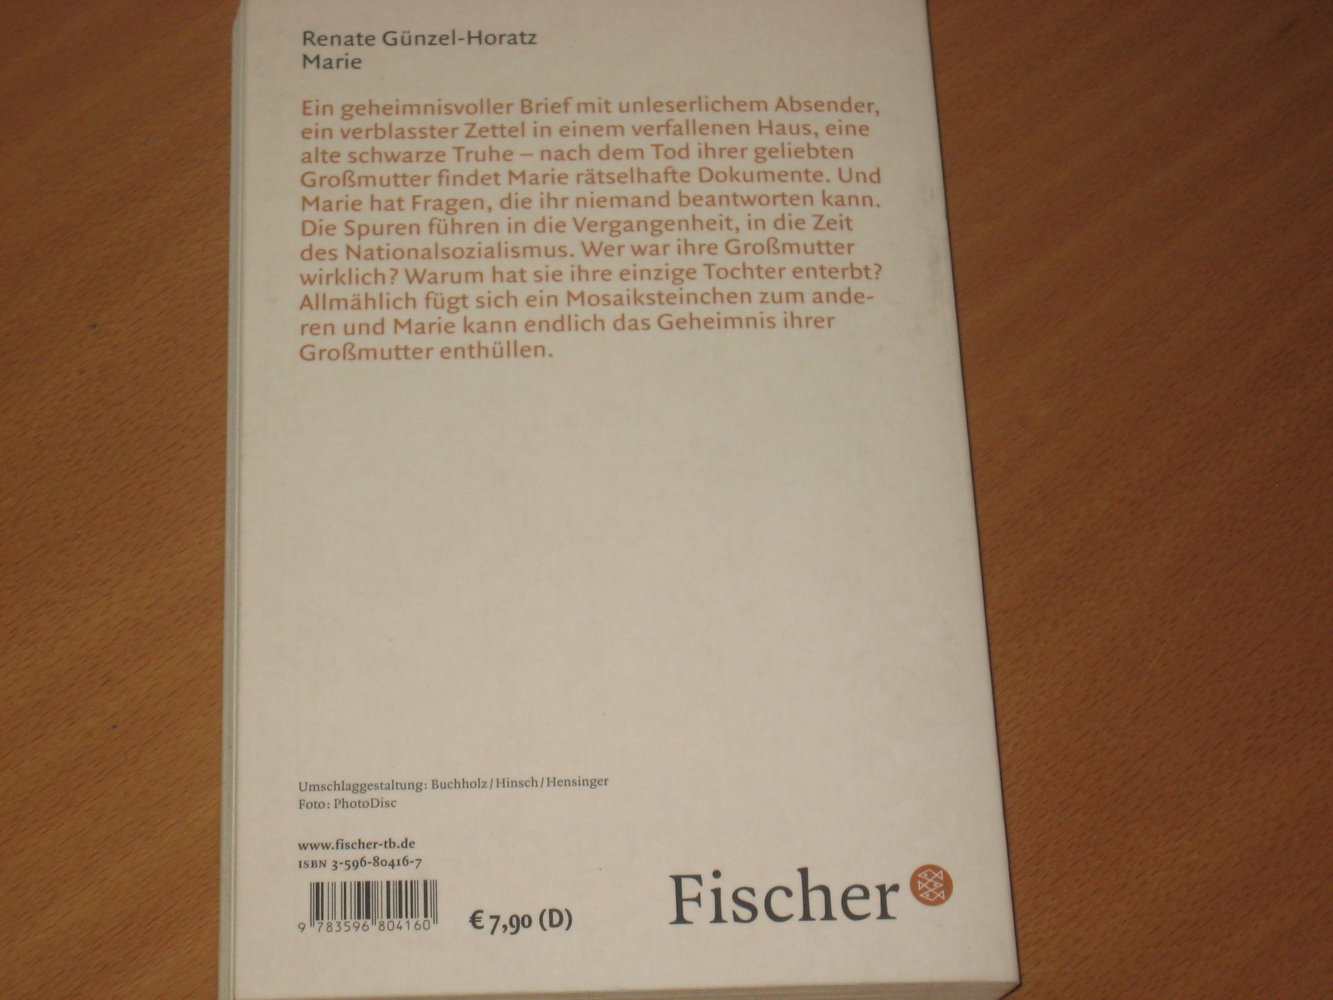 Marie von Renate Günzel-Horatz #Fischer Taschenbuchverlag